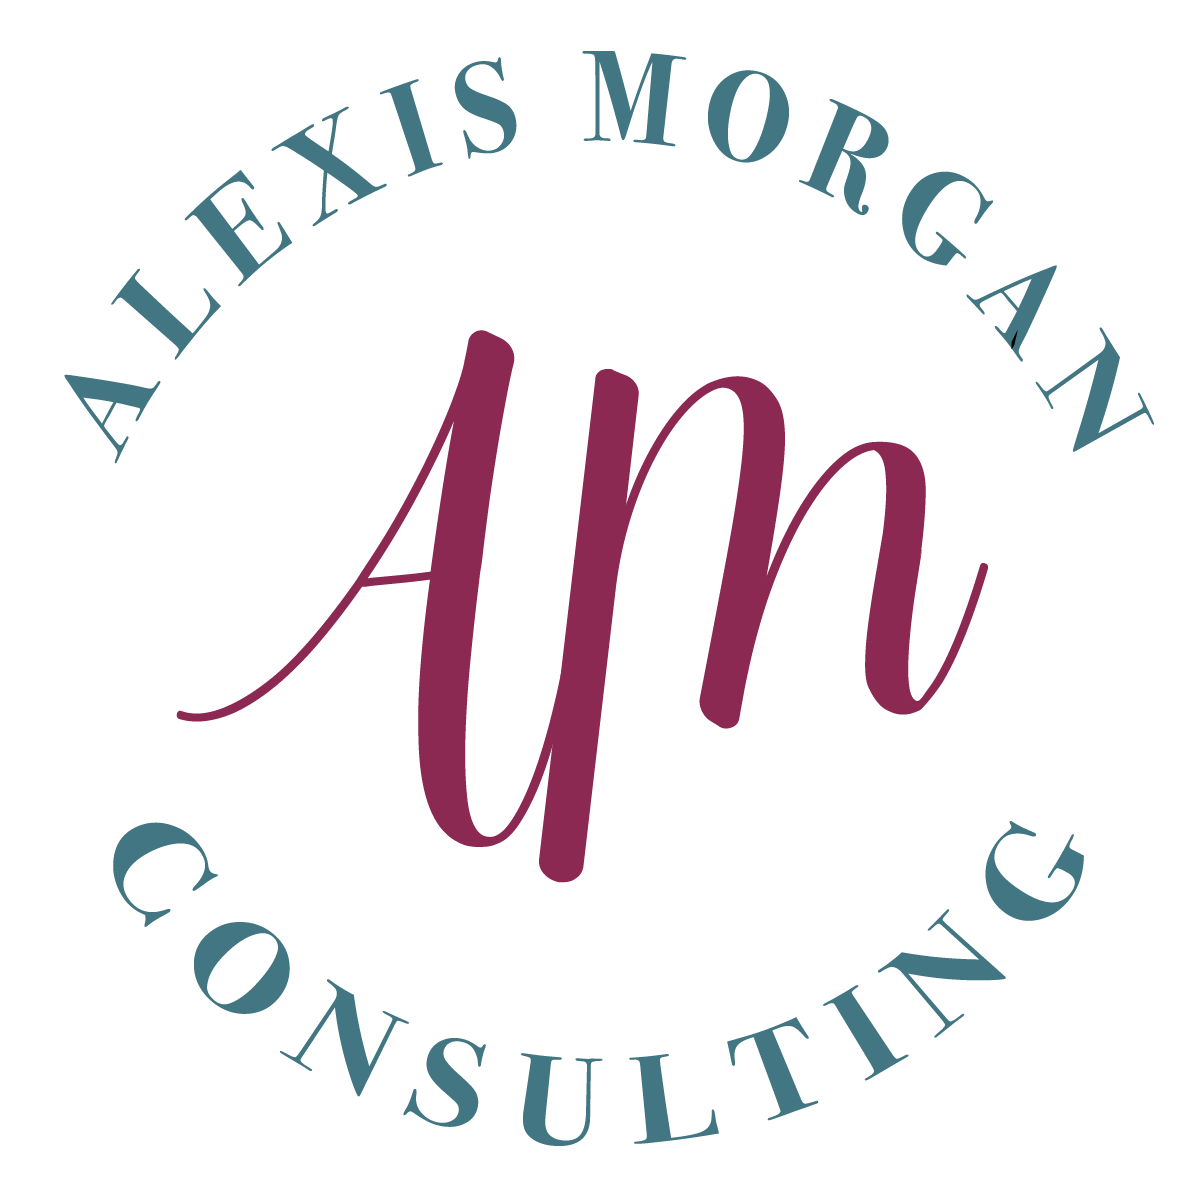 The Alexis Morgan